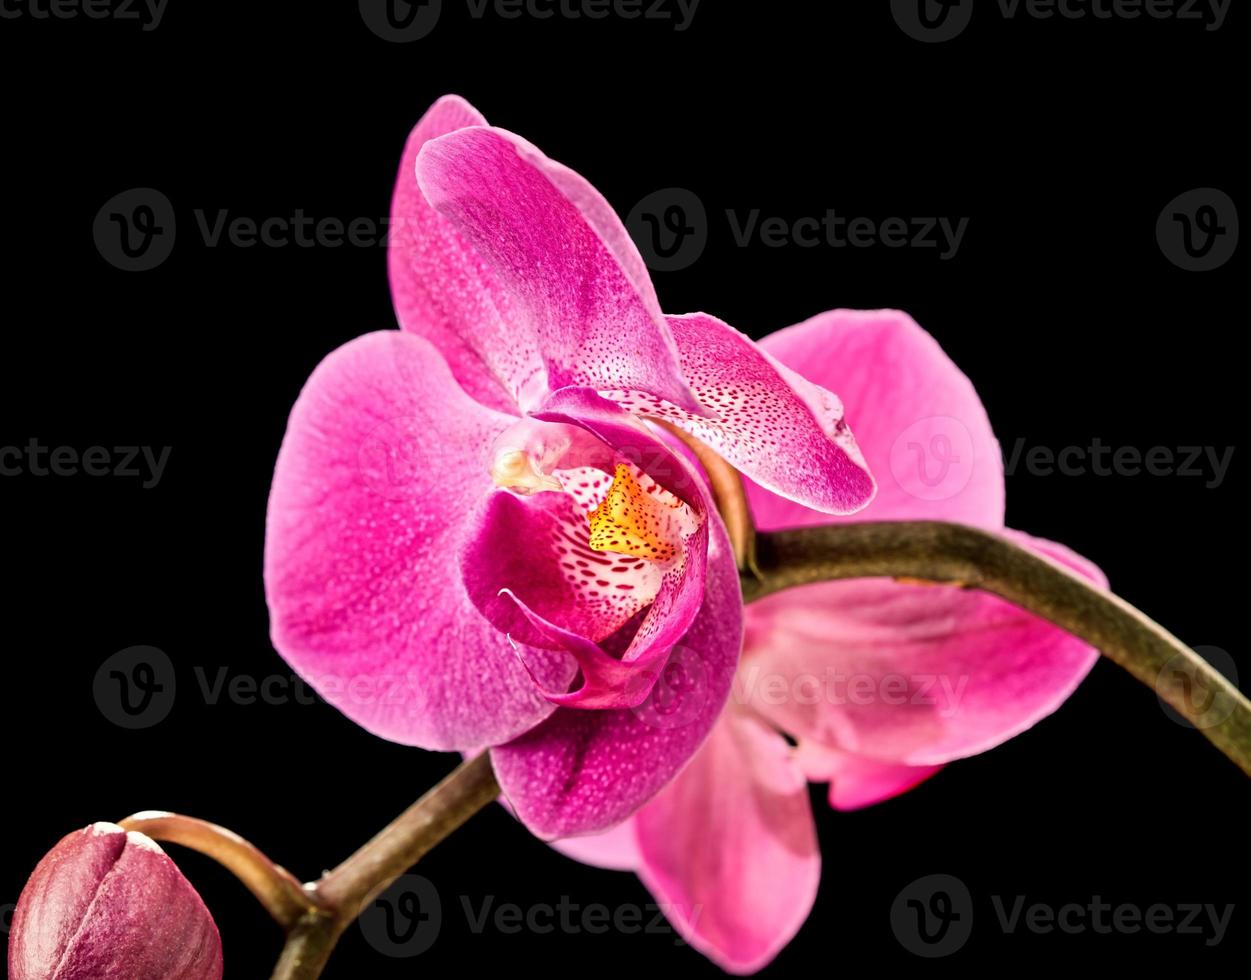 orquídea rosa sobre negro foto